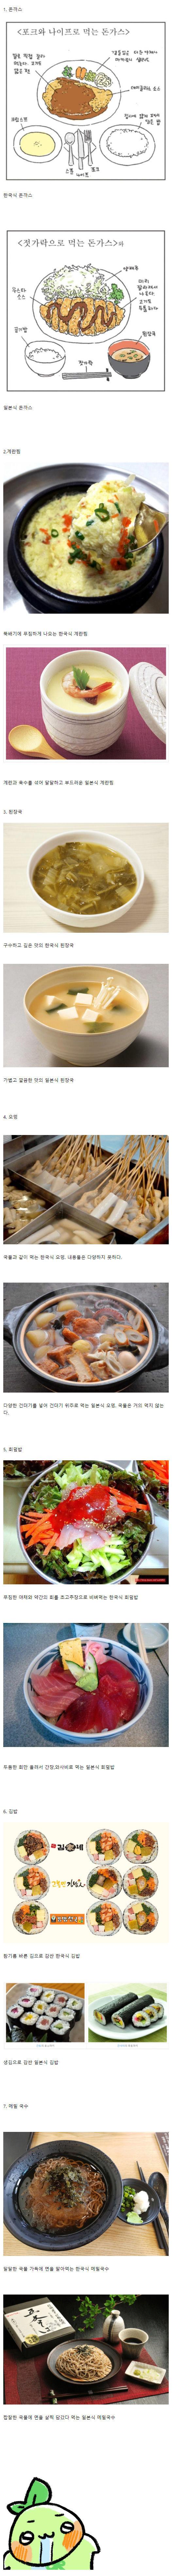 한국음식 일본음식 차이점.jpg